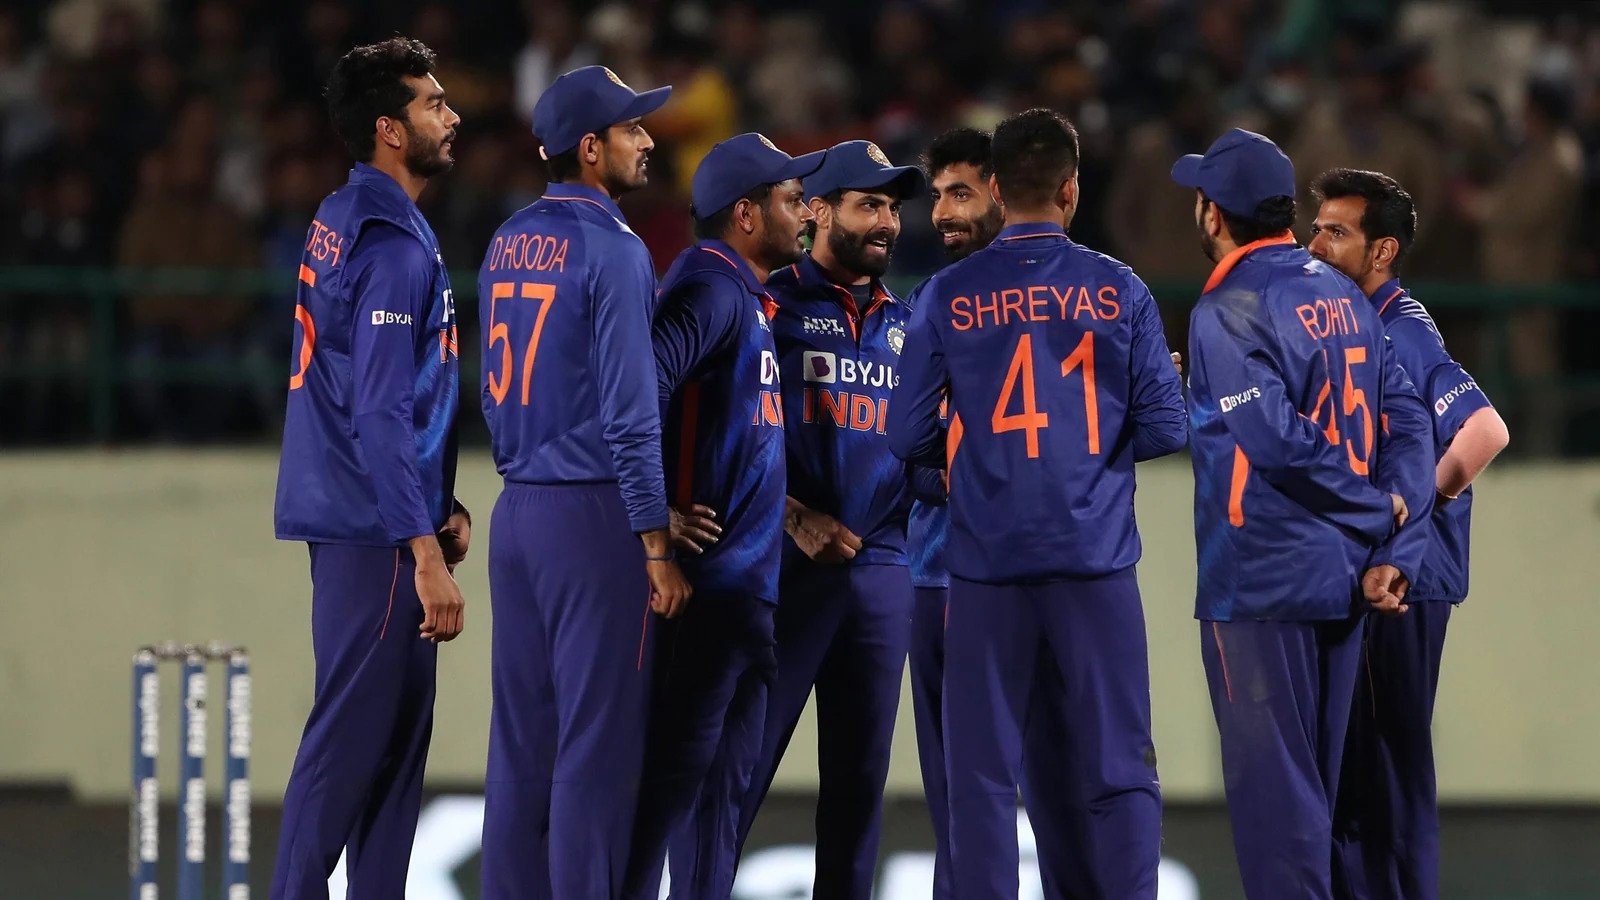 टी20 विश्व कप जीतना चाहते हैं रोहित शर्मा तो इन 3 तेज गेंदबाजों में से किसी एक को मौका देना है जरूरी